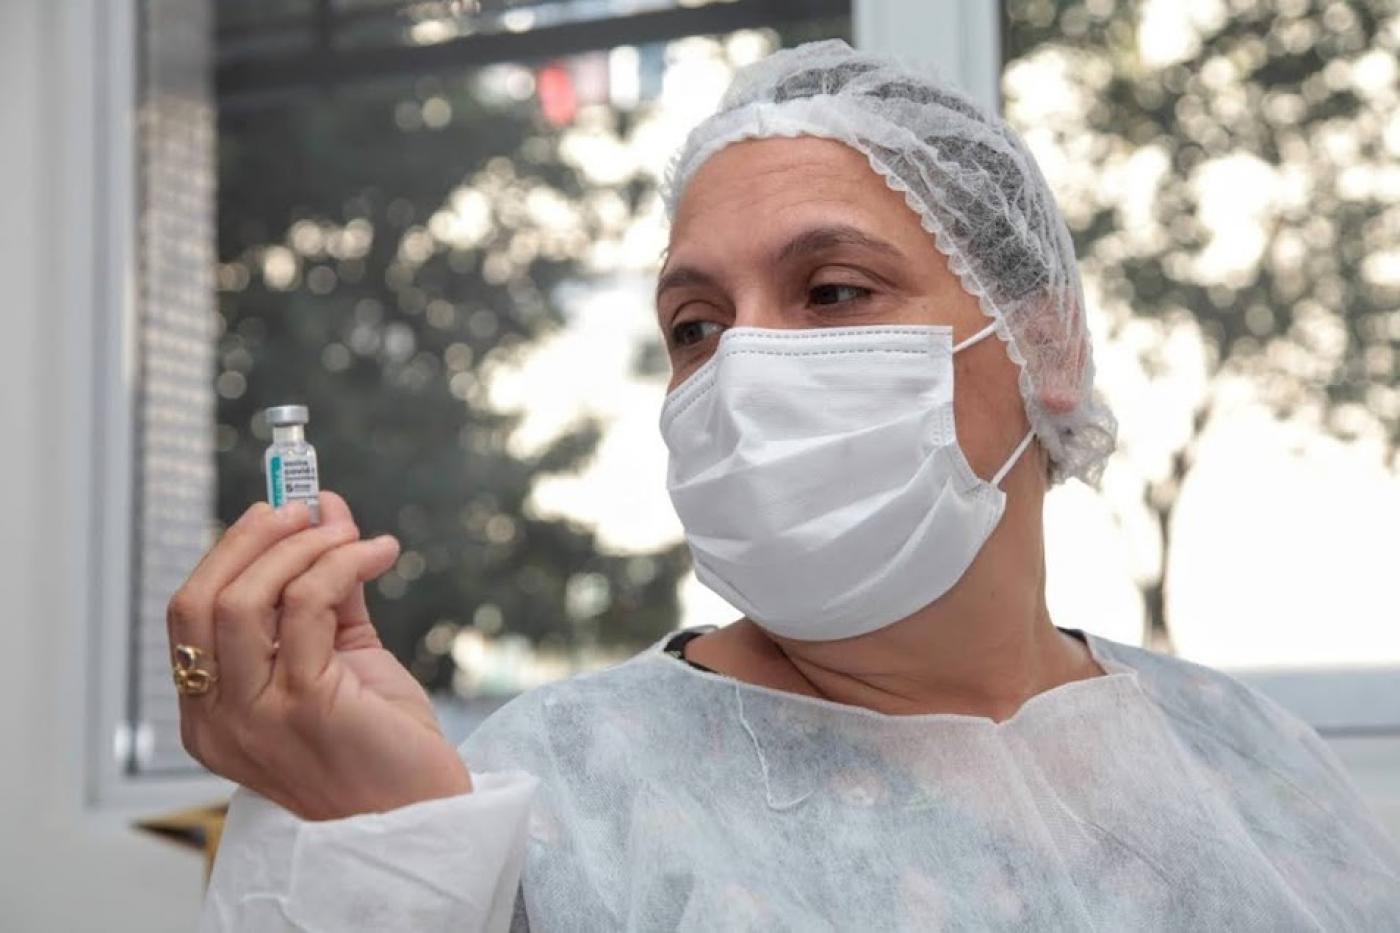 mulher usando avental, touca e máscara segura frasco com dose de vacina na mão direita. Ela olha o frasco.#paratodosverem